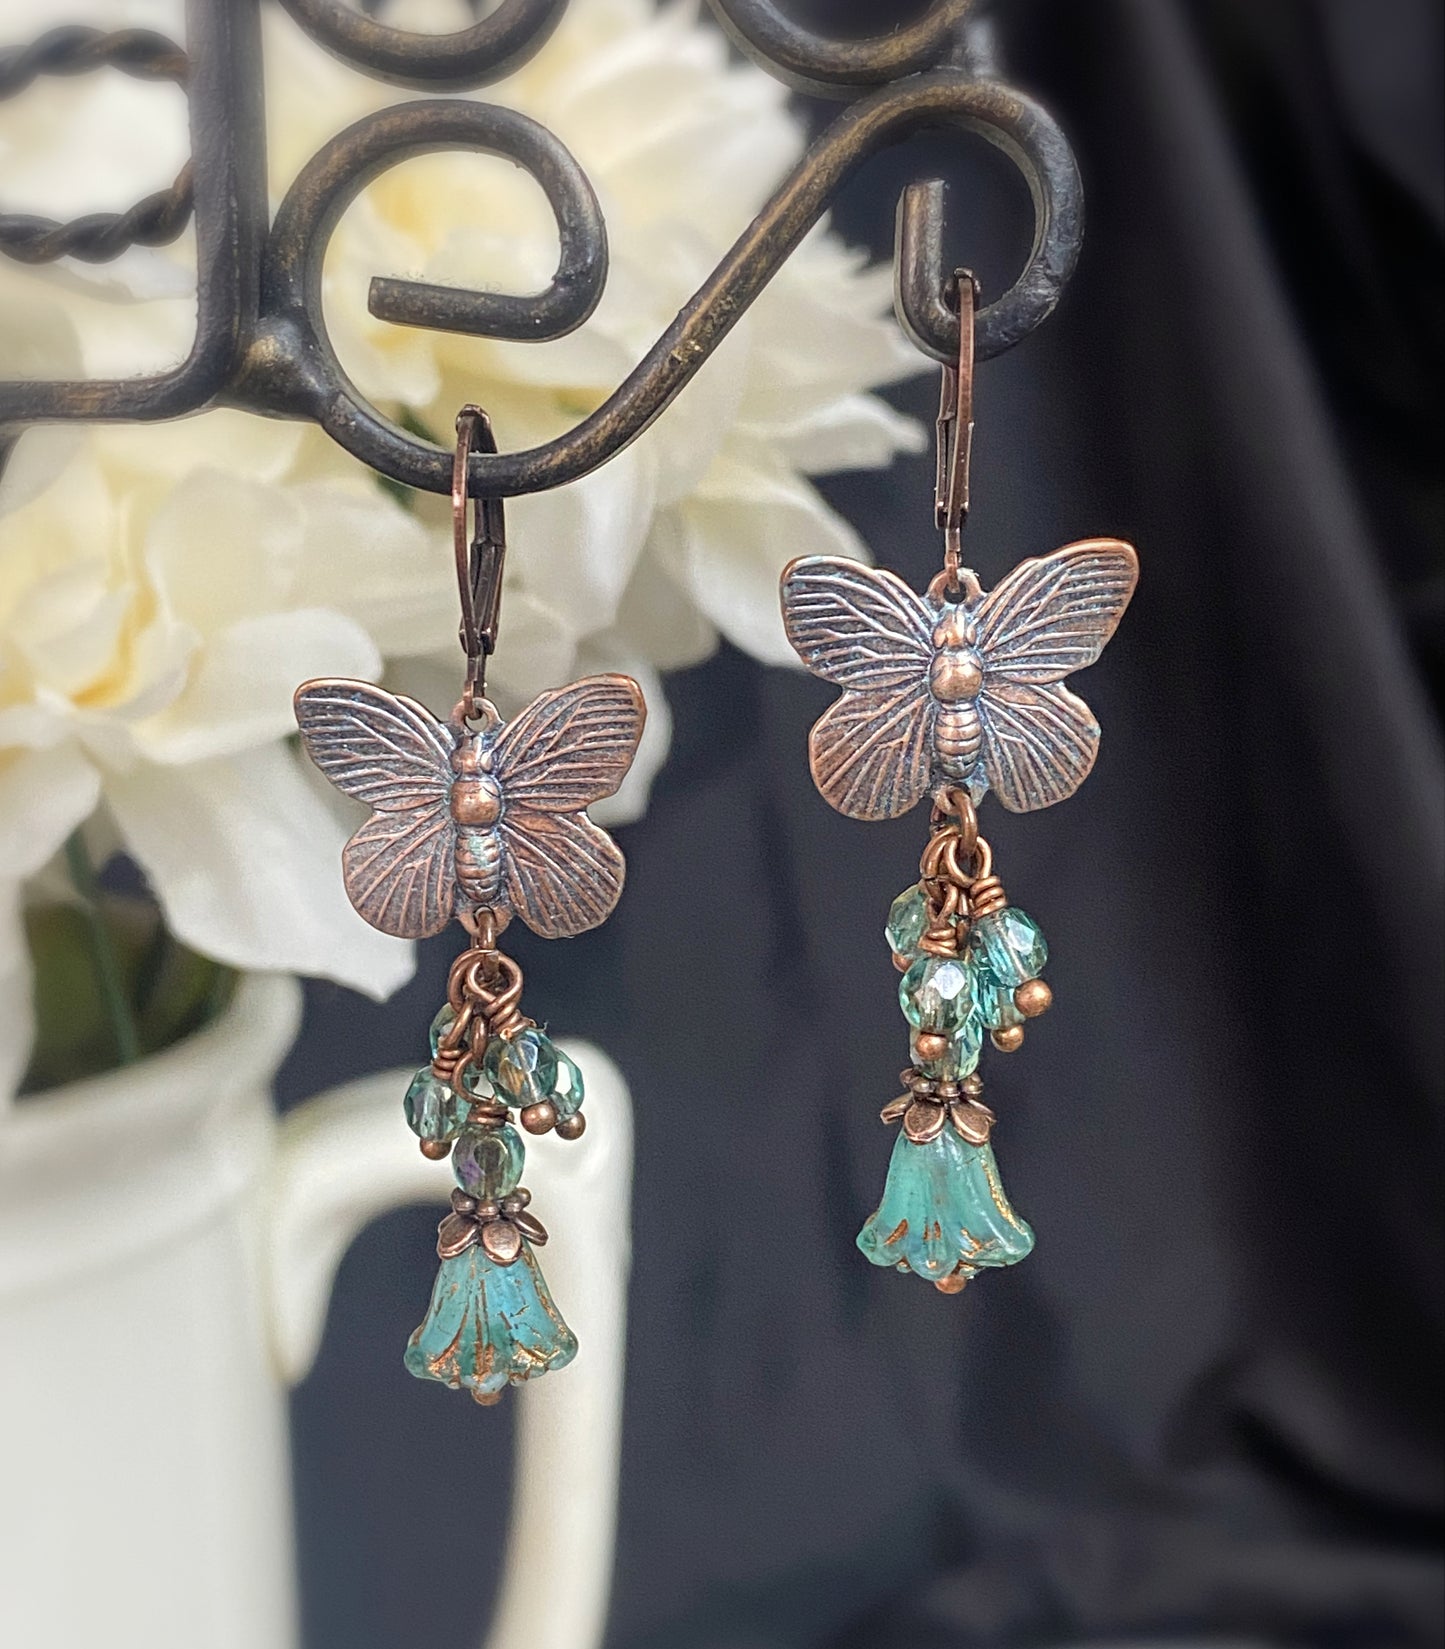 Teal Butterfly charms, Czech glass, copper metal, earrings